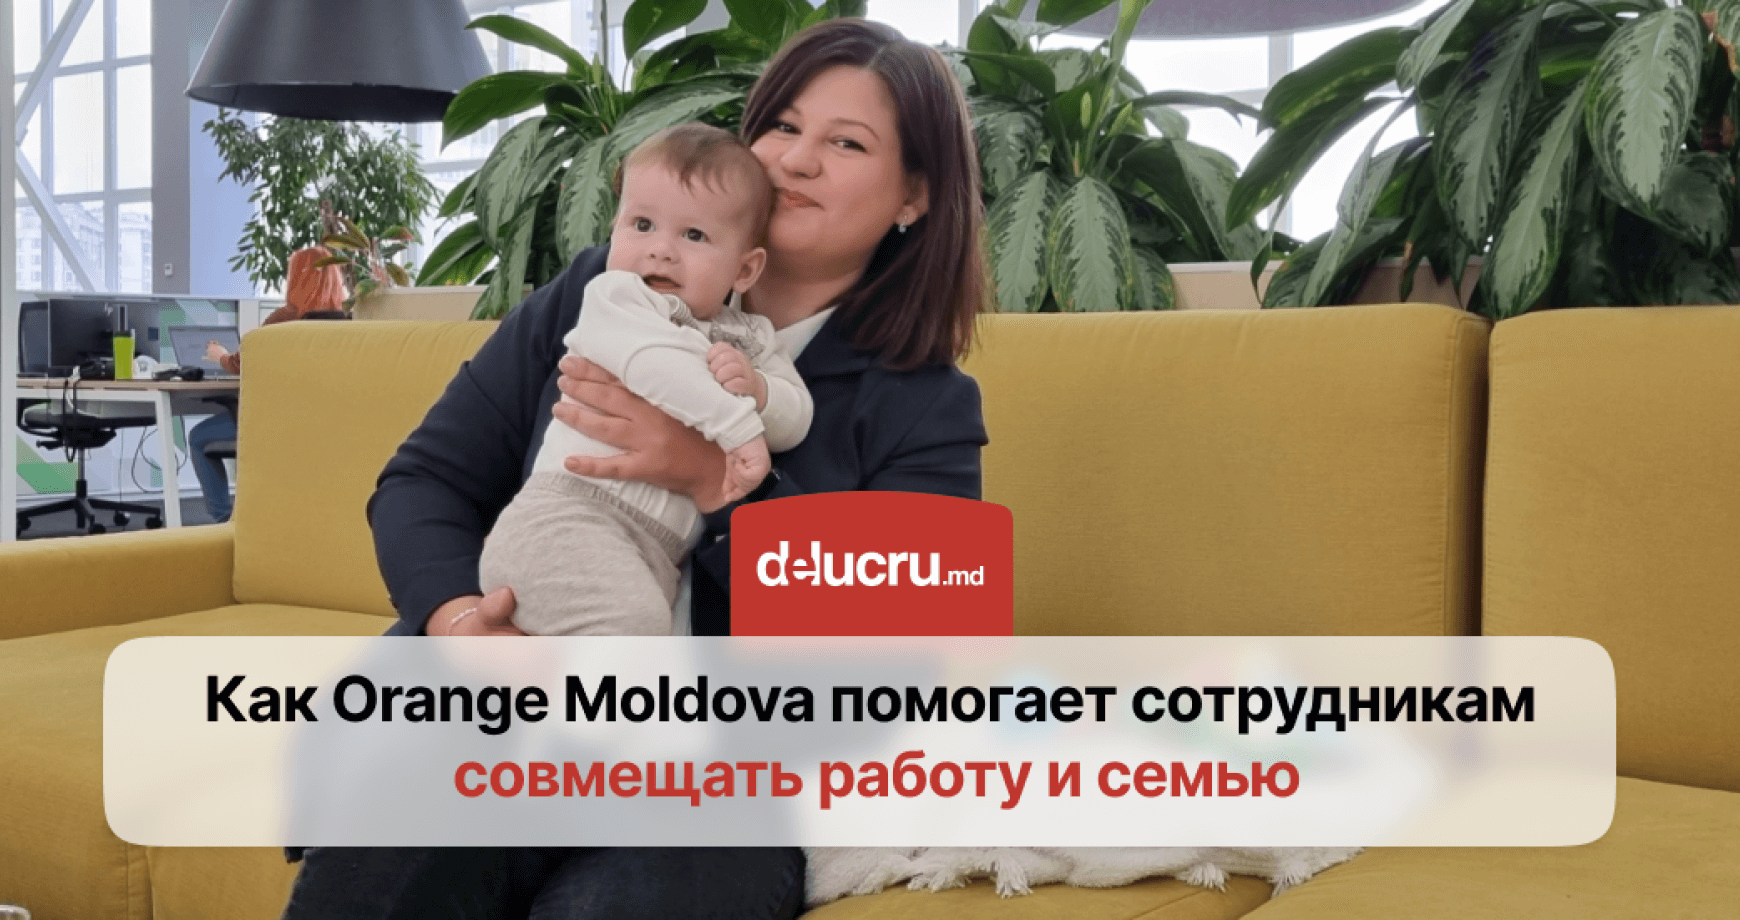 Равенство в управлении: в “Orange Мoldova” половину руководящих должностей занимают женщины